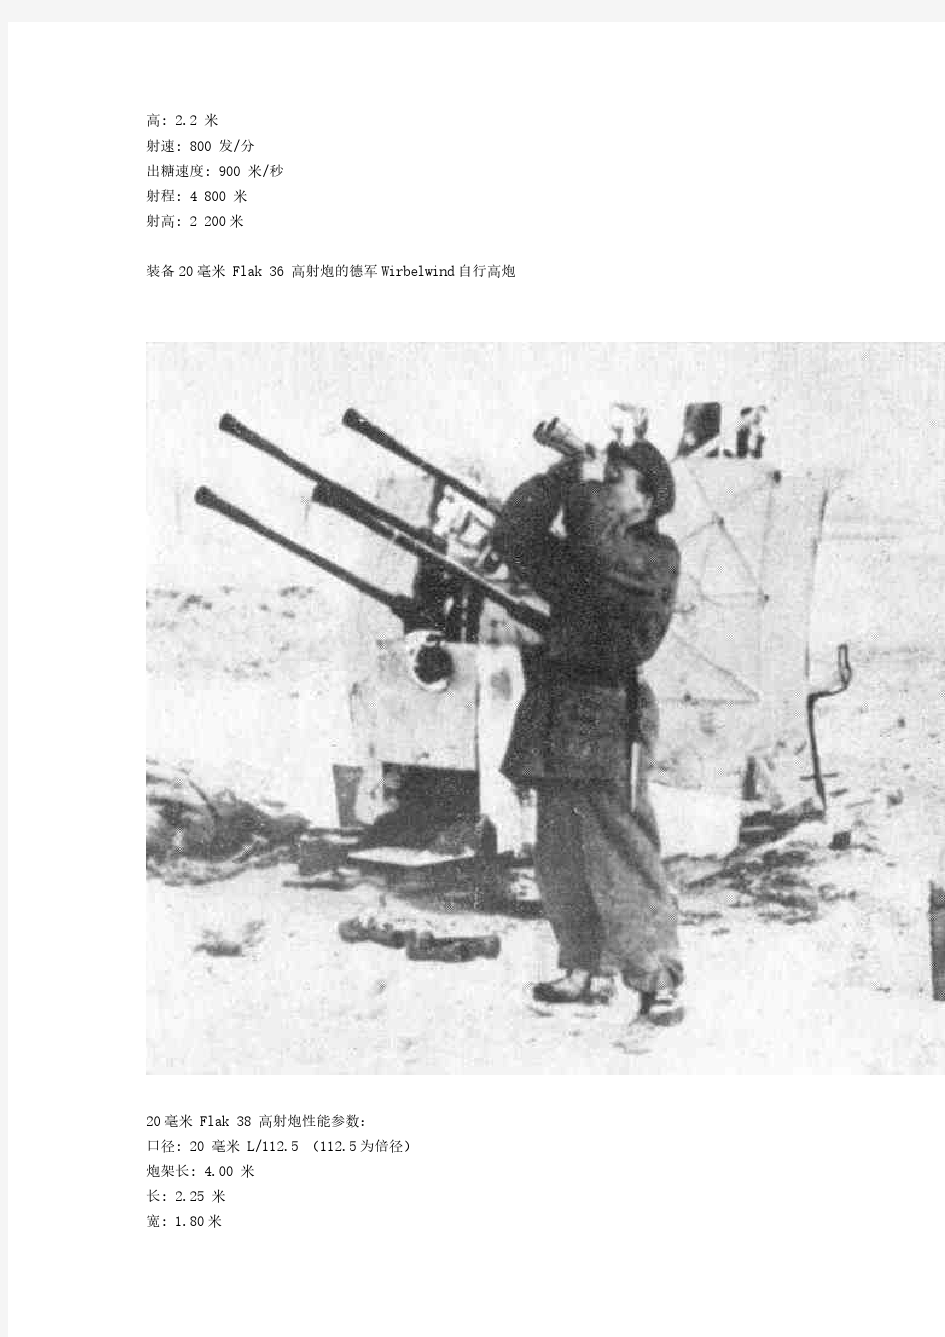 二战德国火炮大全系列1防空炮